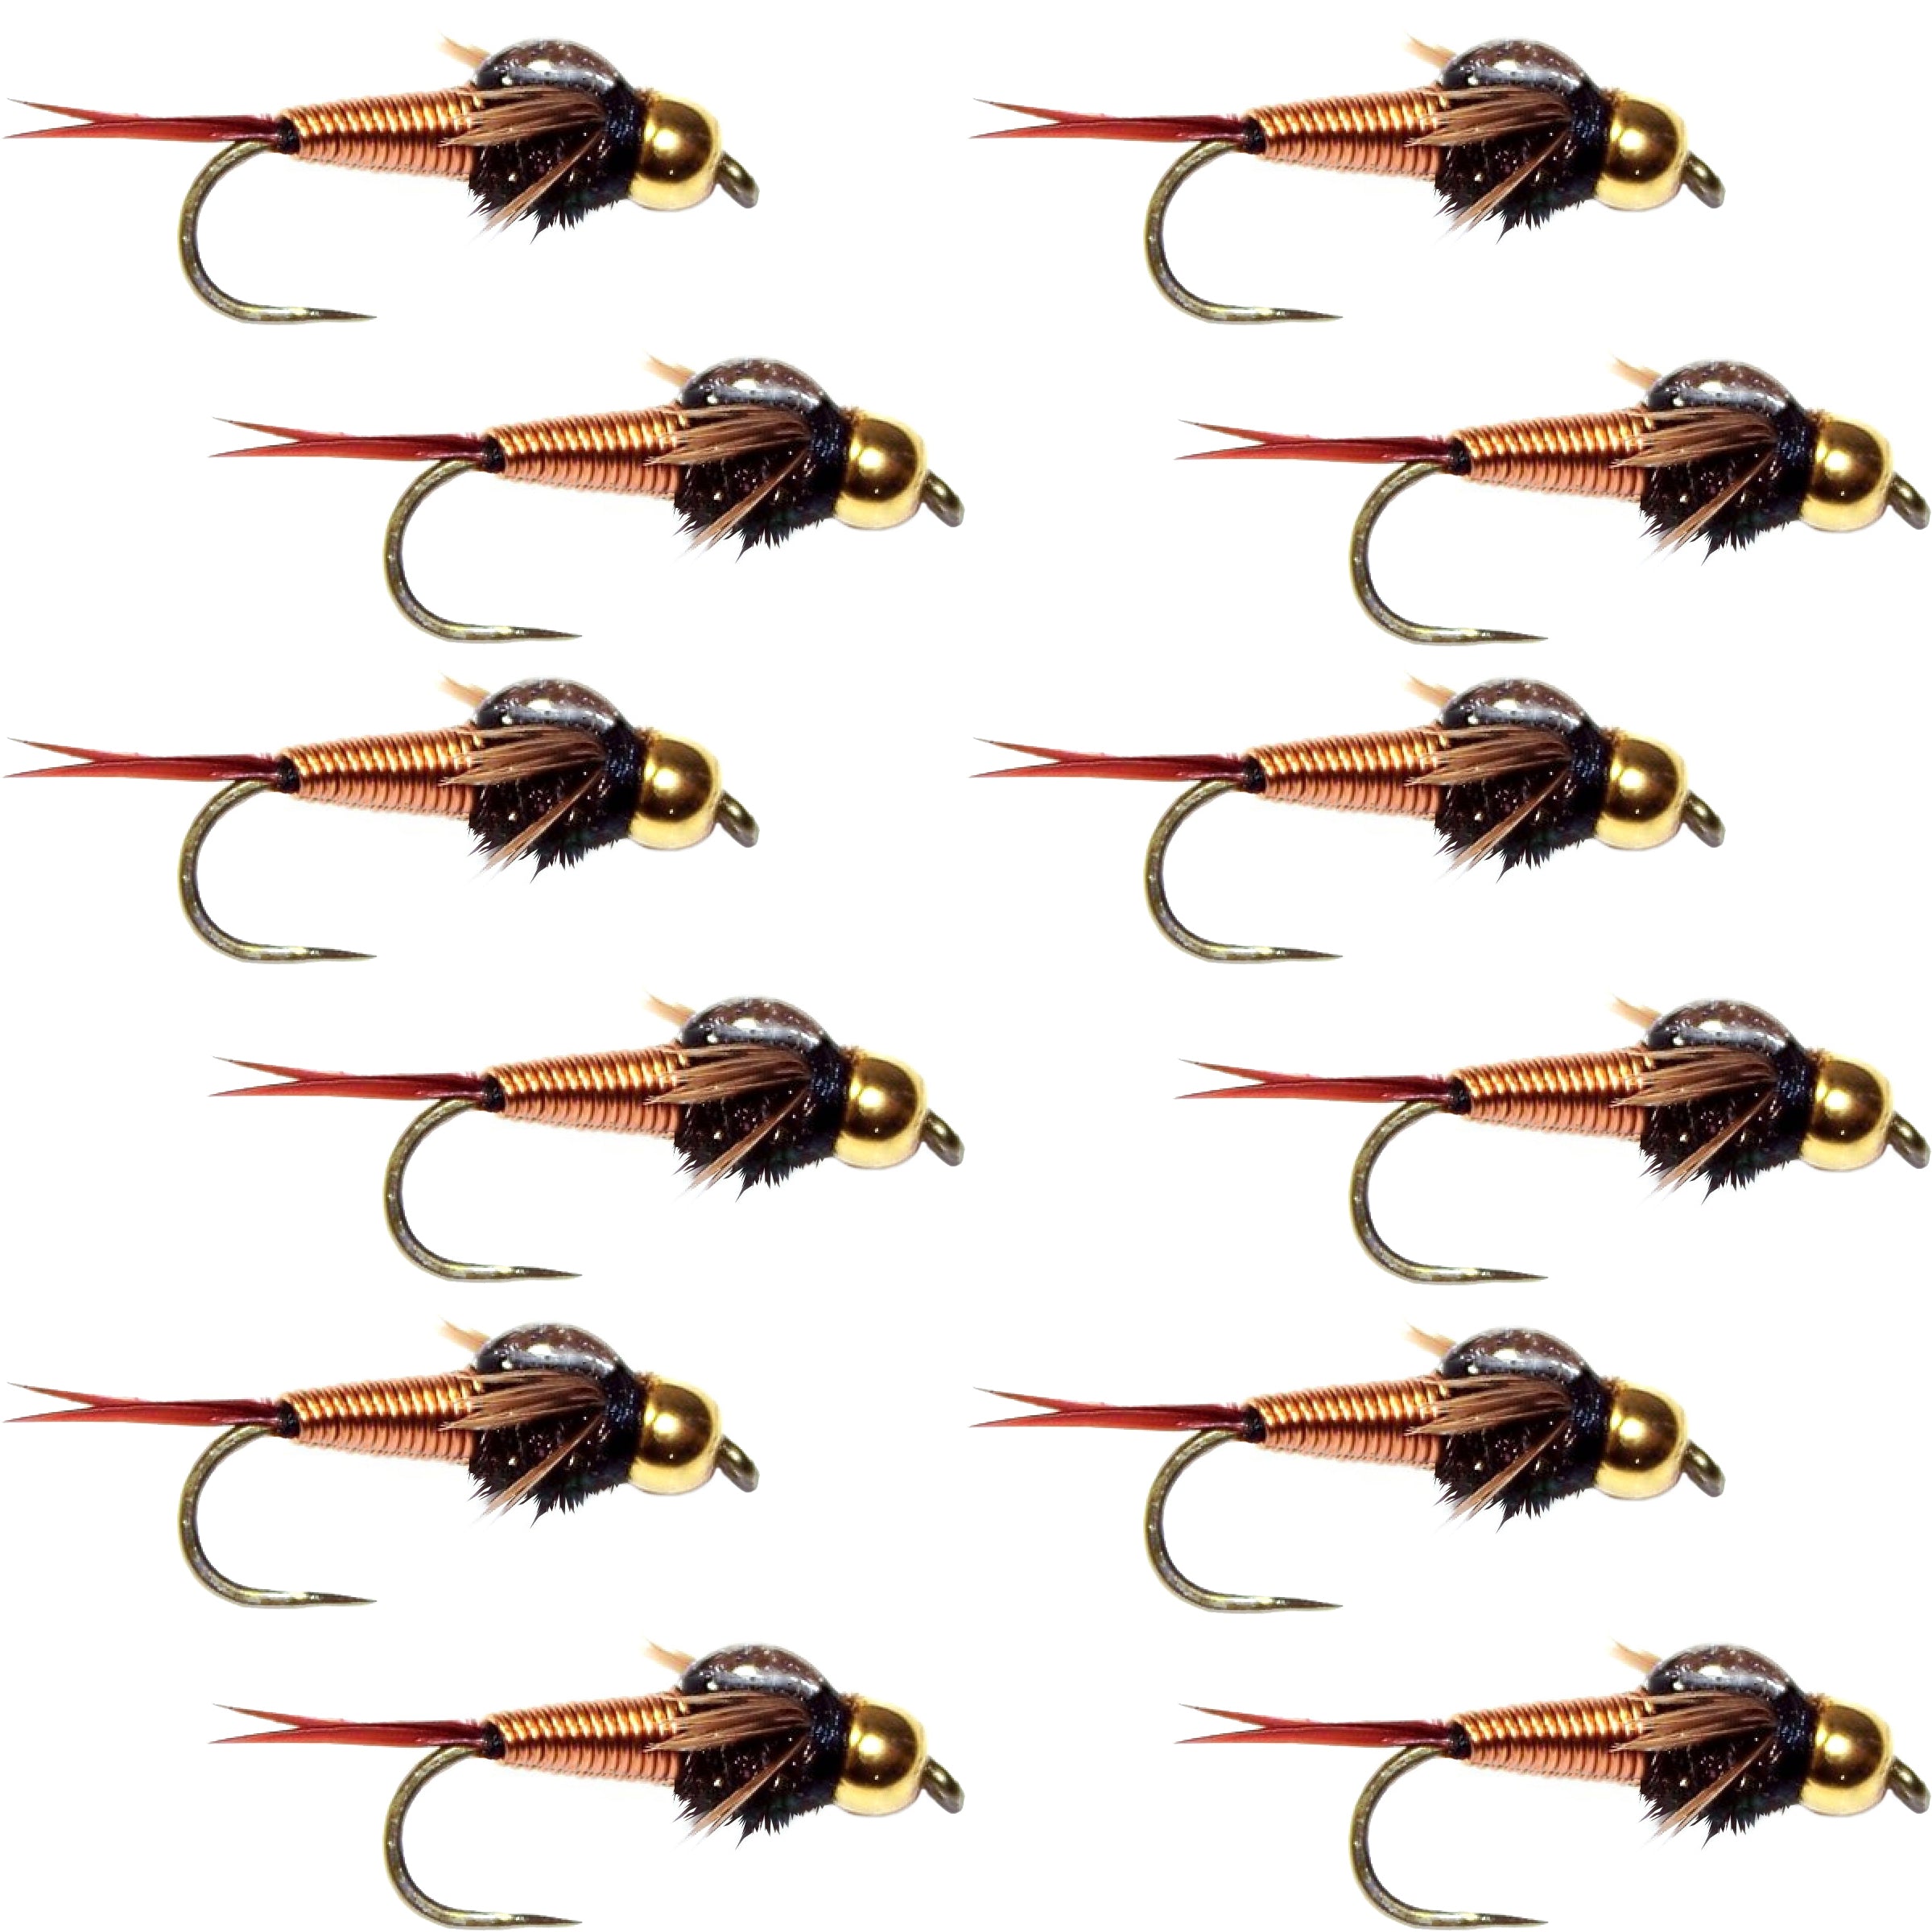 Barbless Bead Head Copper John Nymph Fly 1 Dozen  Fishing Flies -  Hook Size 14